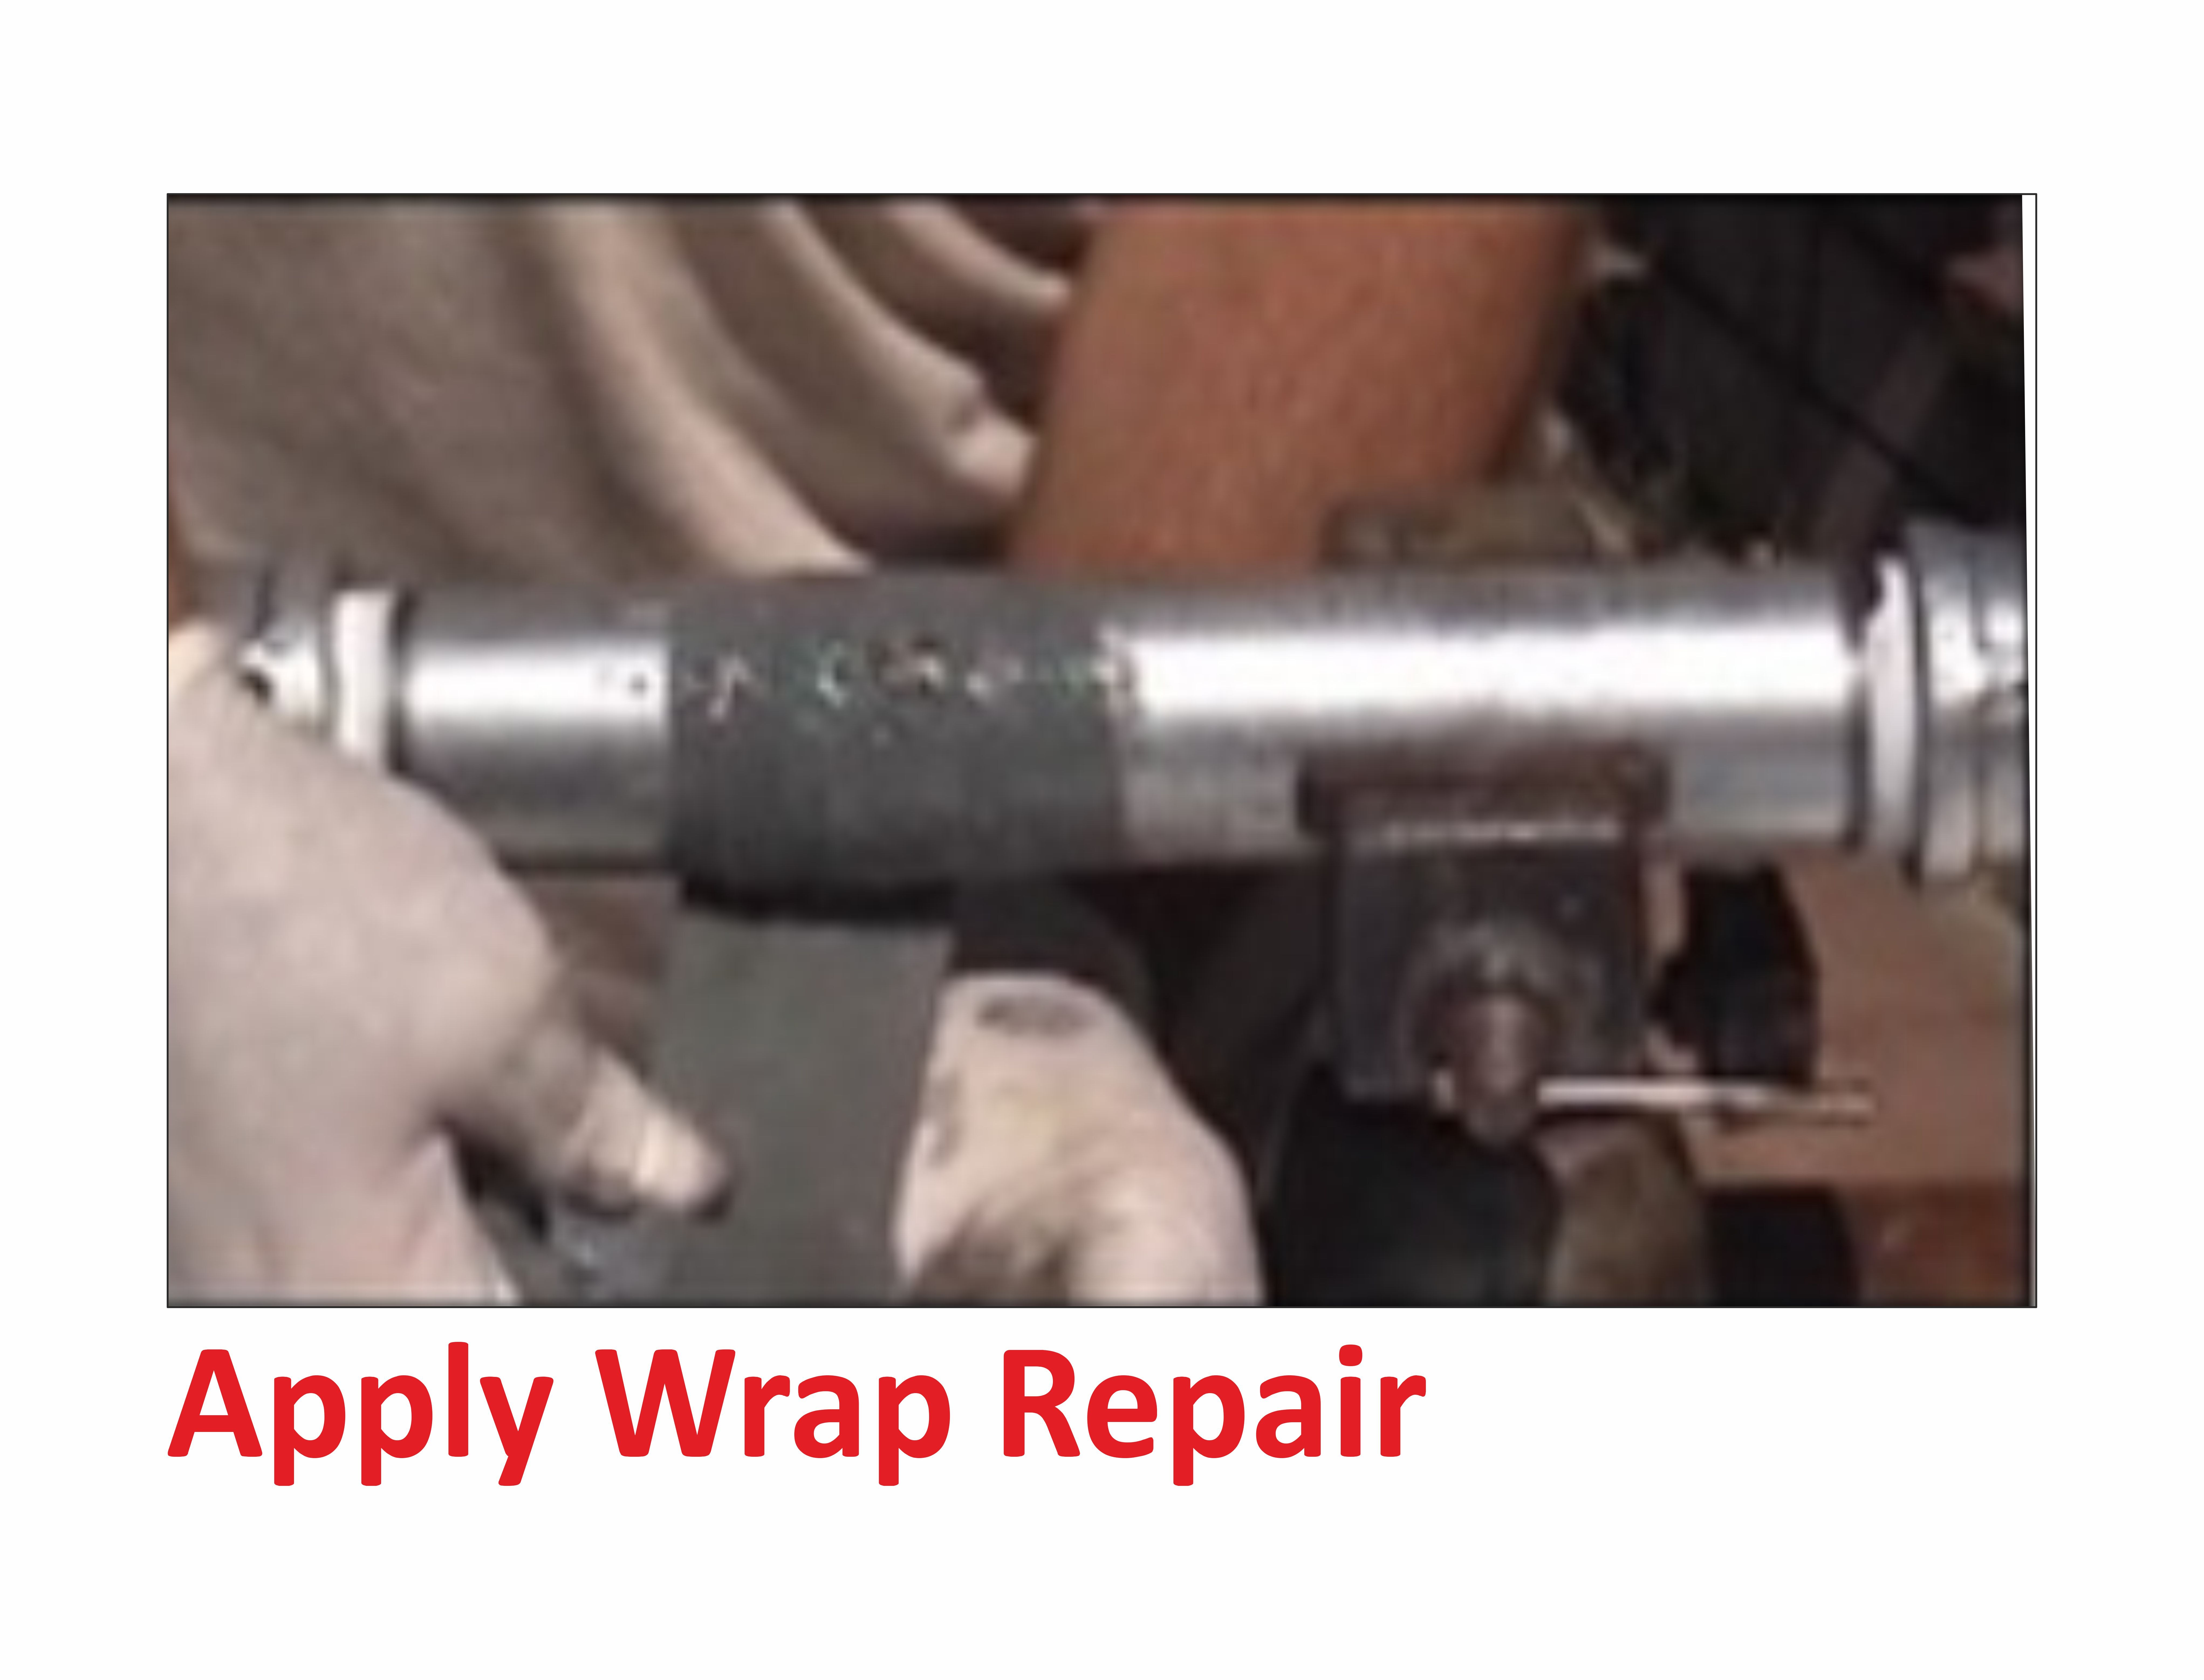 Zero Leak Pipe Repair Kit 100mm wide x 4.5m long